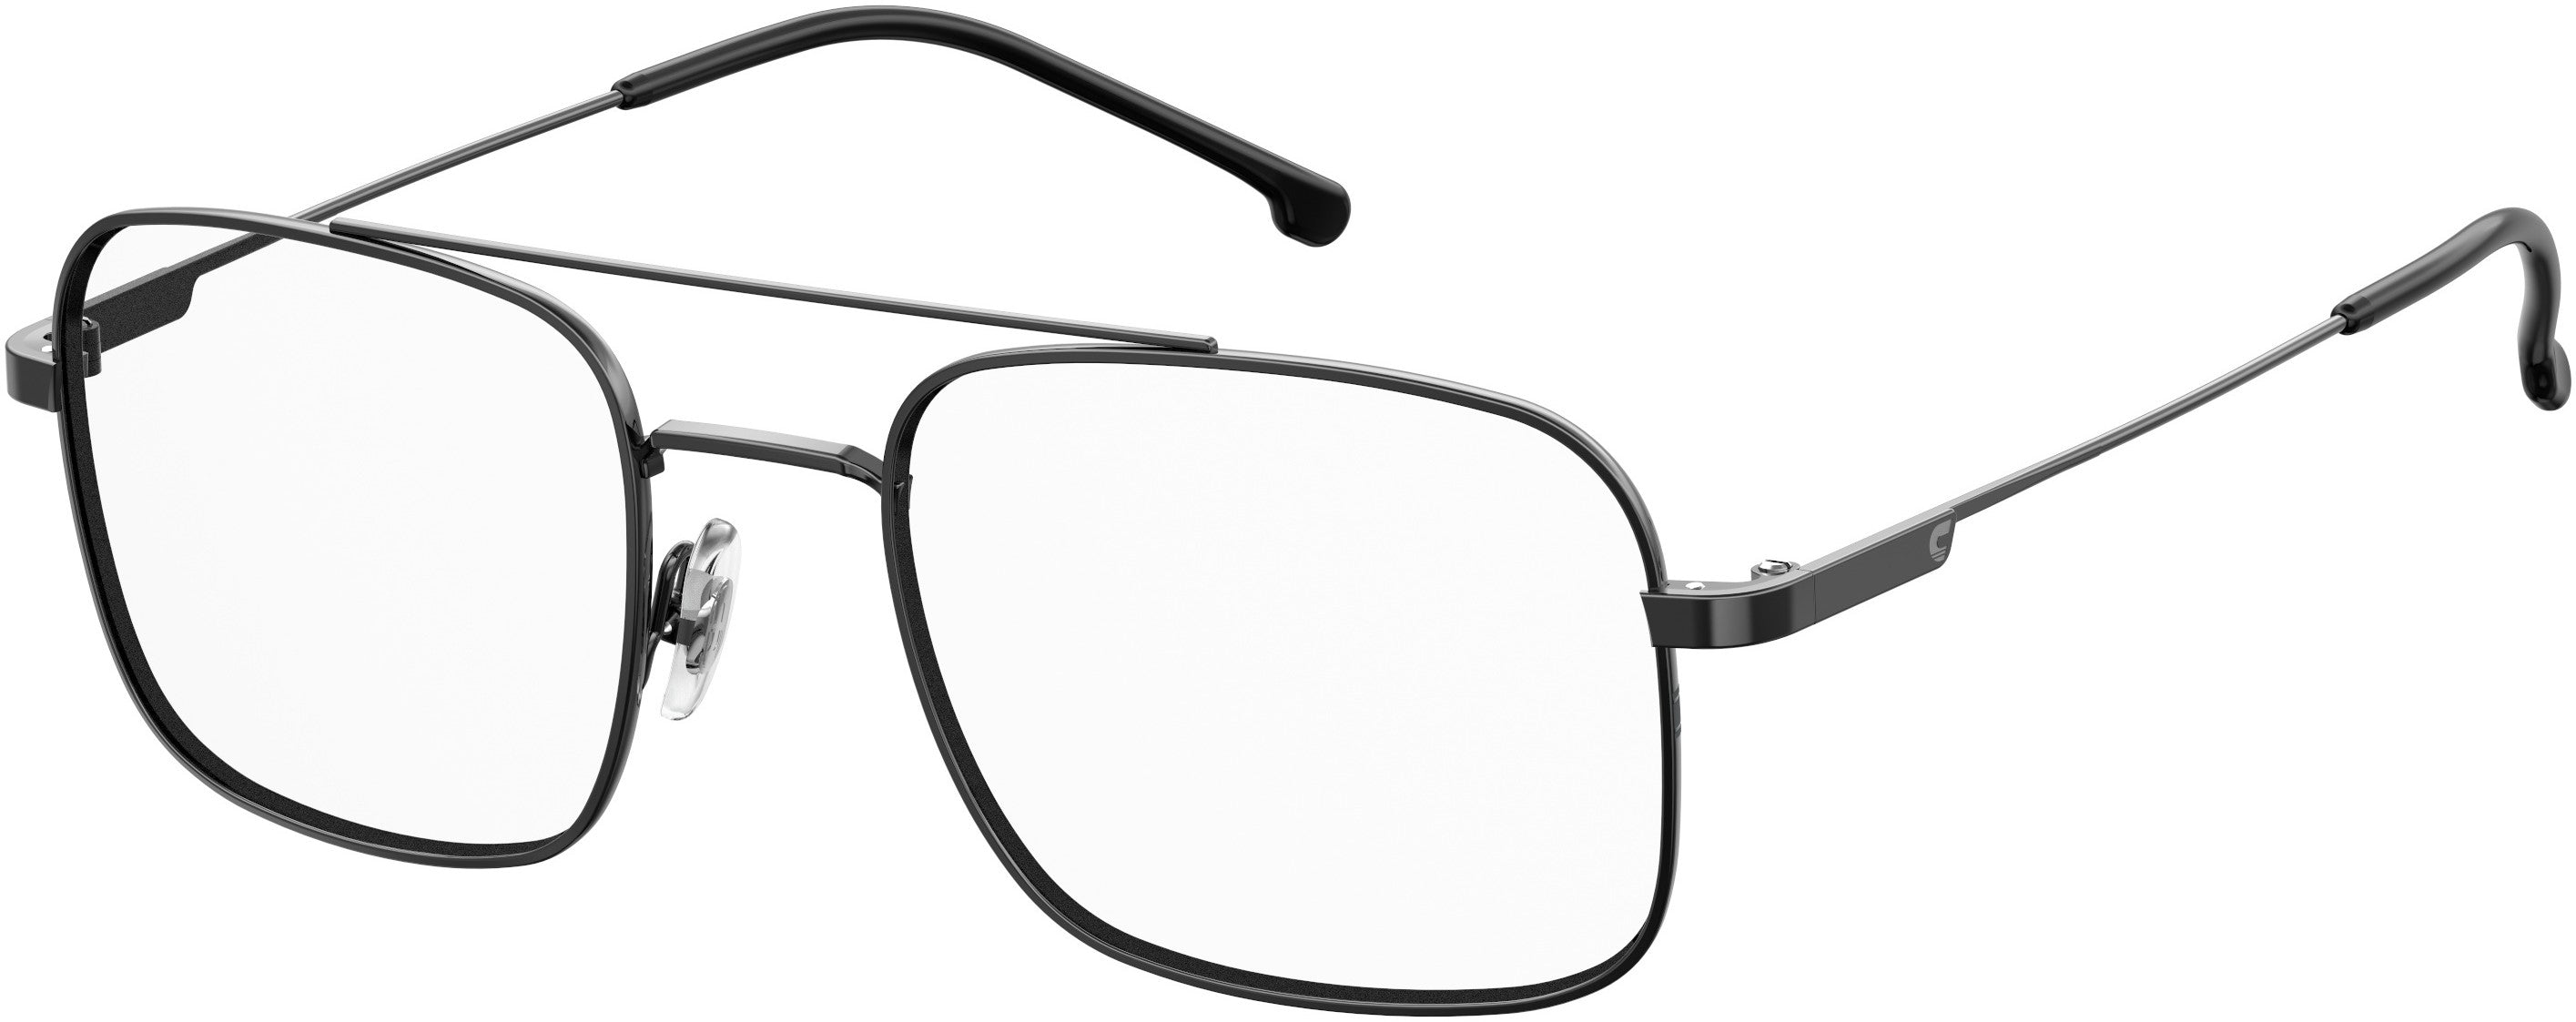  Carrera 2010/T Rectangular Eyeglasses 0V81-0V81  Dark Ruthenium Black (00 Demo Lens)